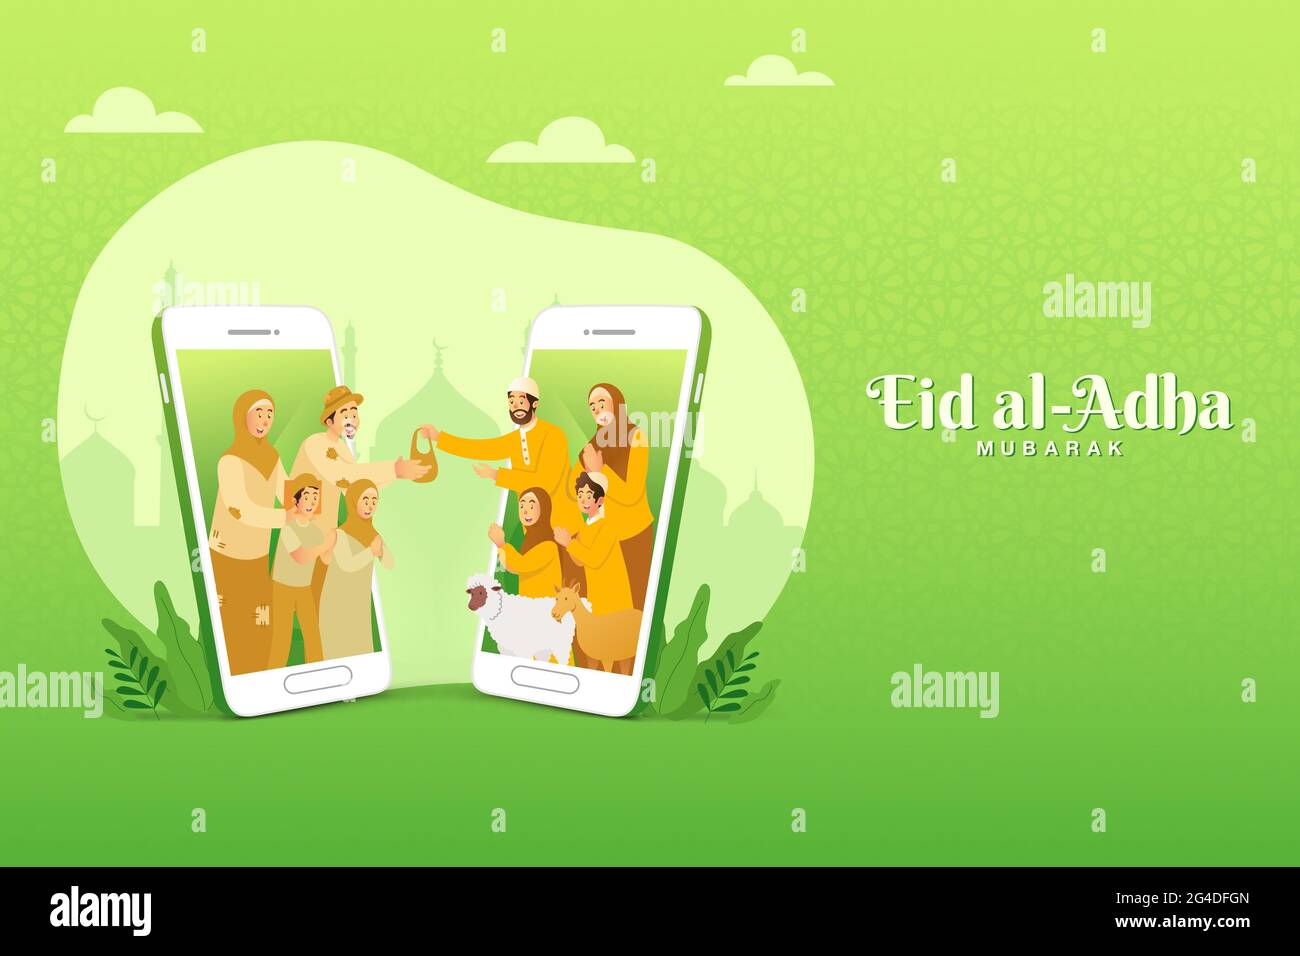 tarjeta de felicitación de eid al adha. familia musulmana compartiendo la carne de animales sacrificados para gente pobre a través del concepto de pantalla de smartphone Ilustración del Vector